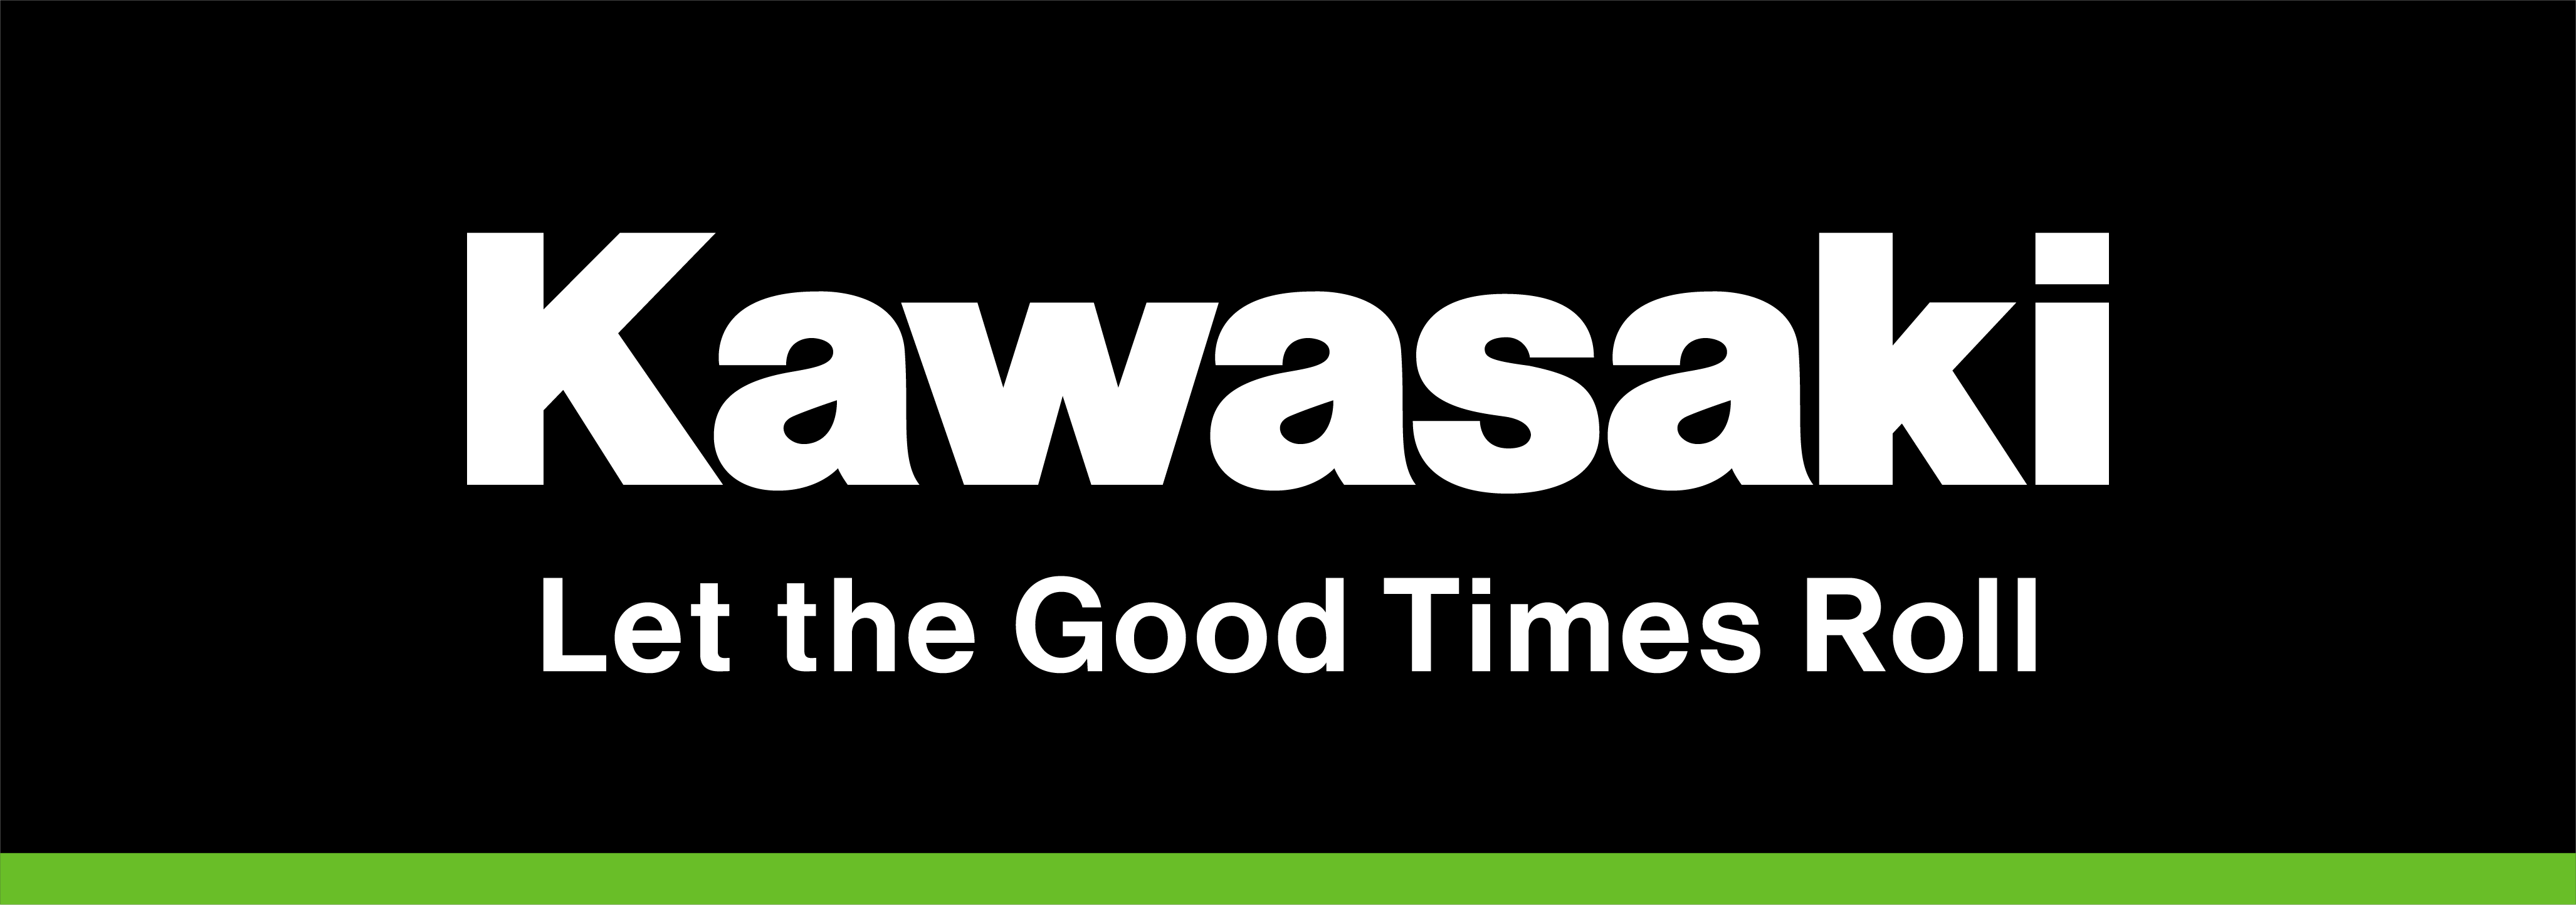 Kawasaki-Roadshow